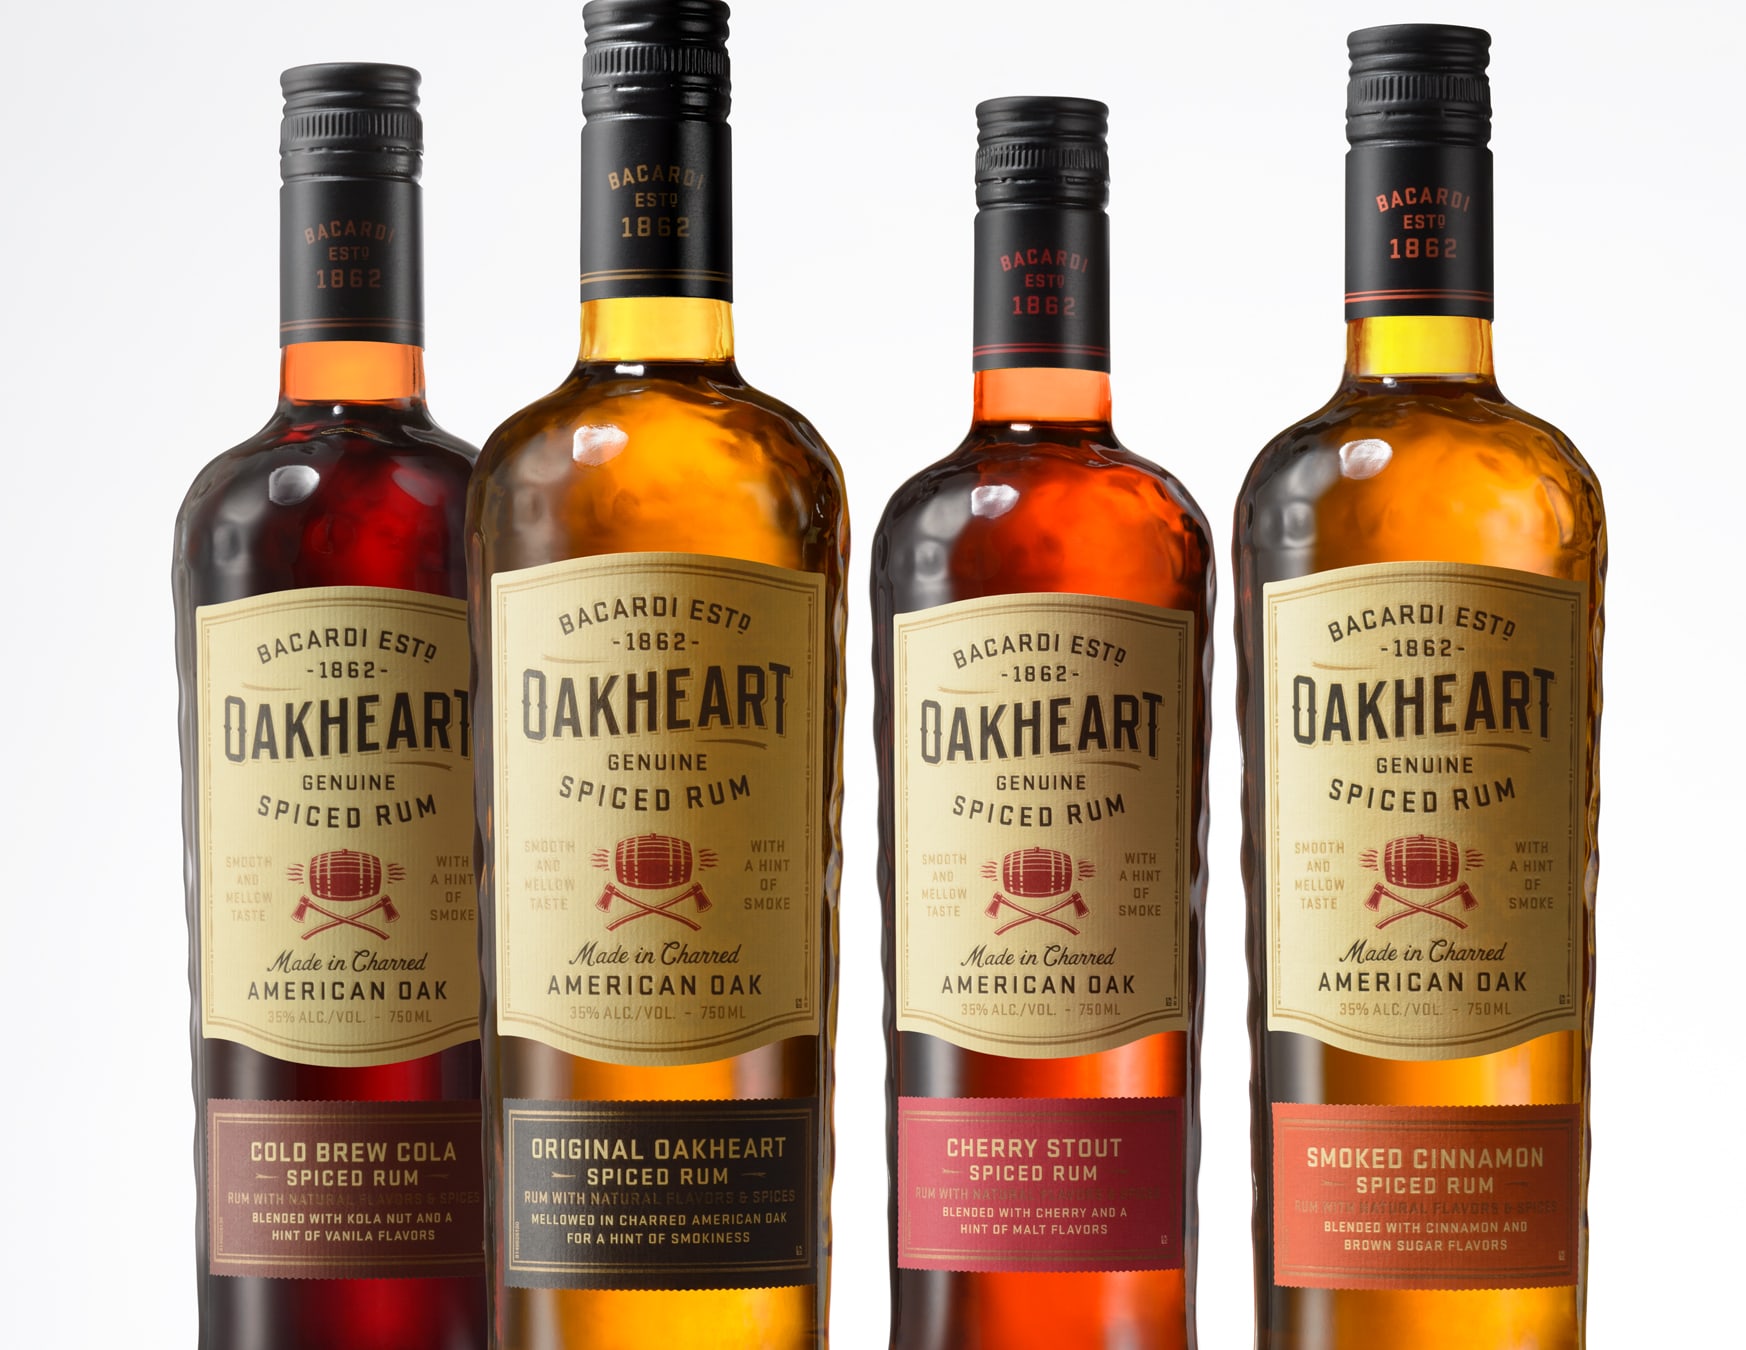 Oakheart Spiced Rum spirits packaging design family